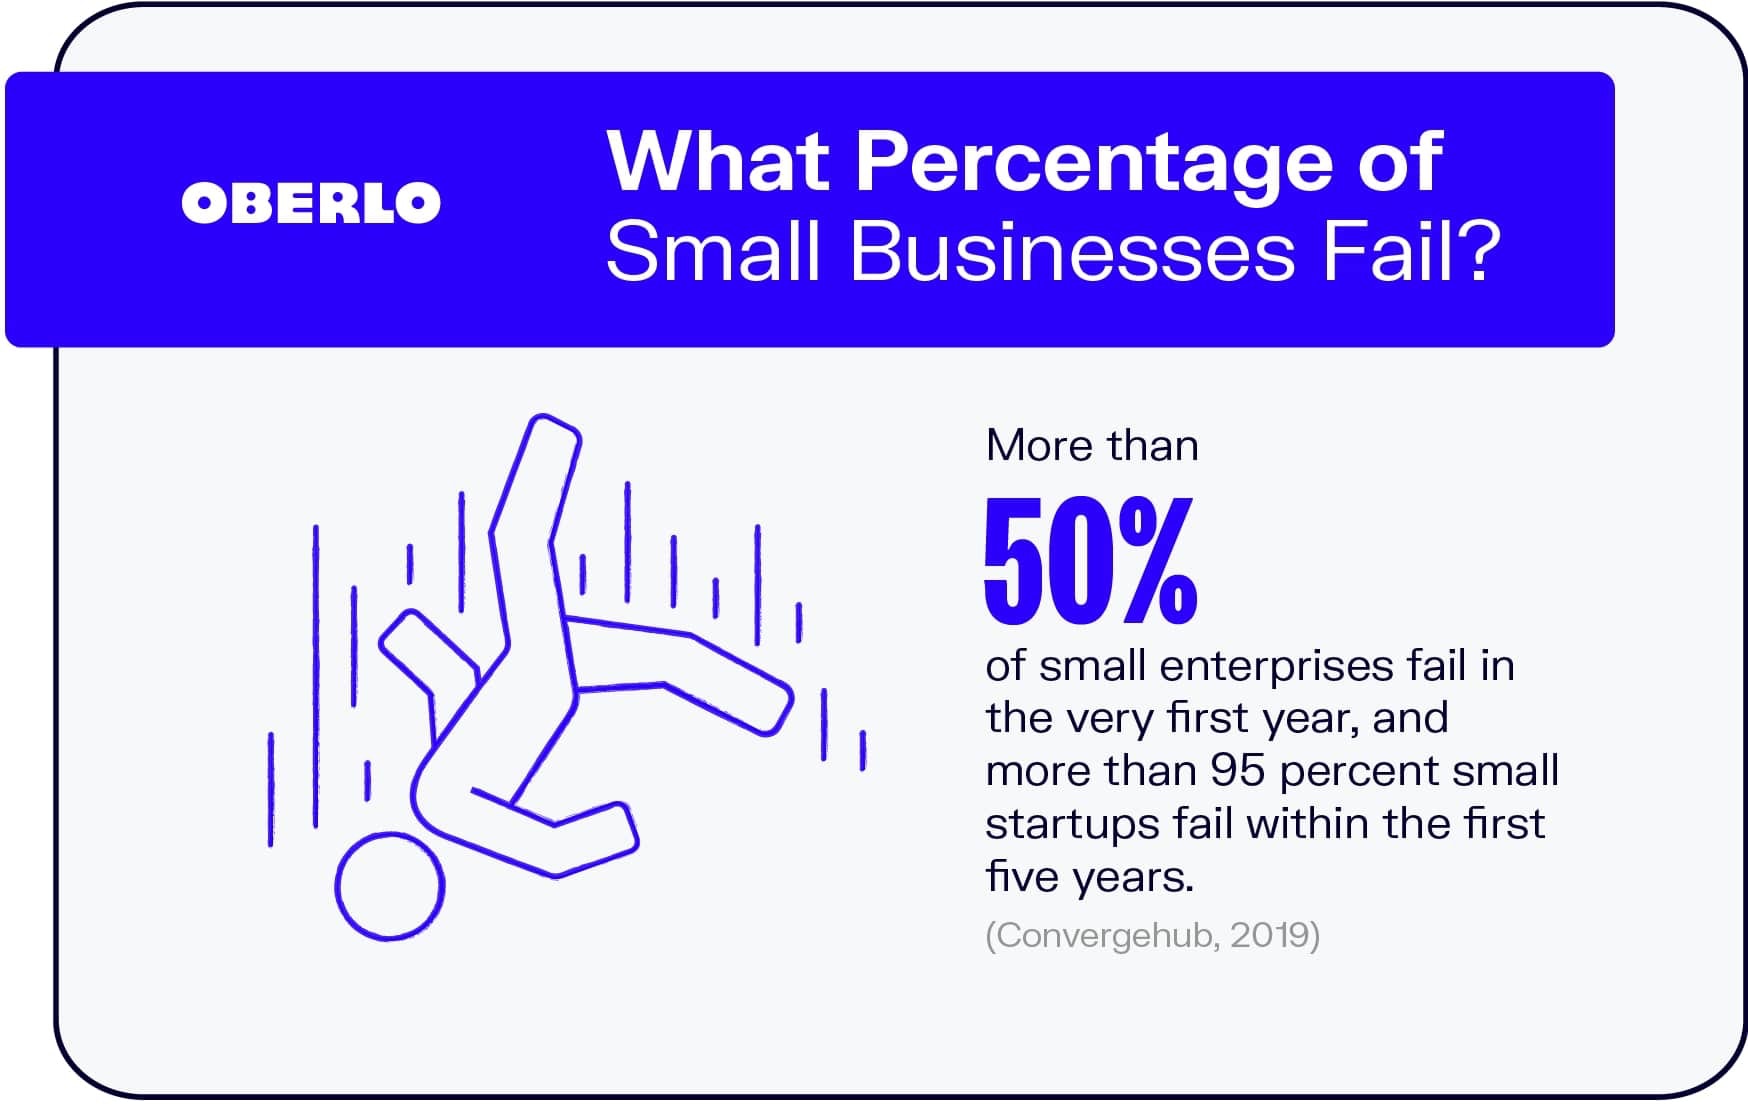 小企业失败的比例是多少?